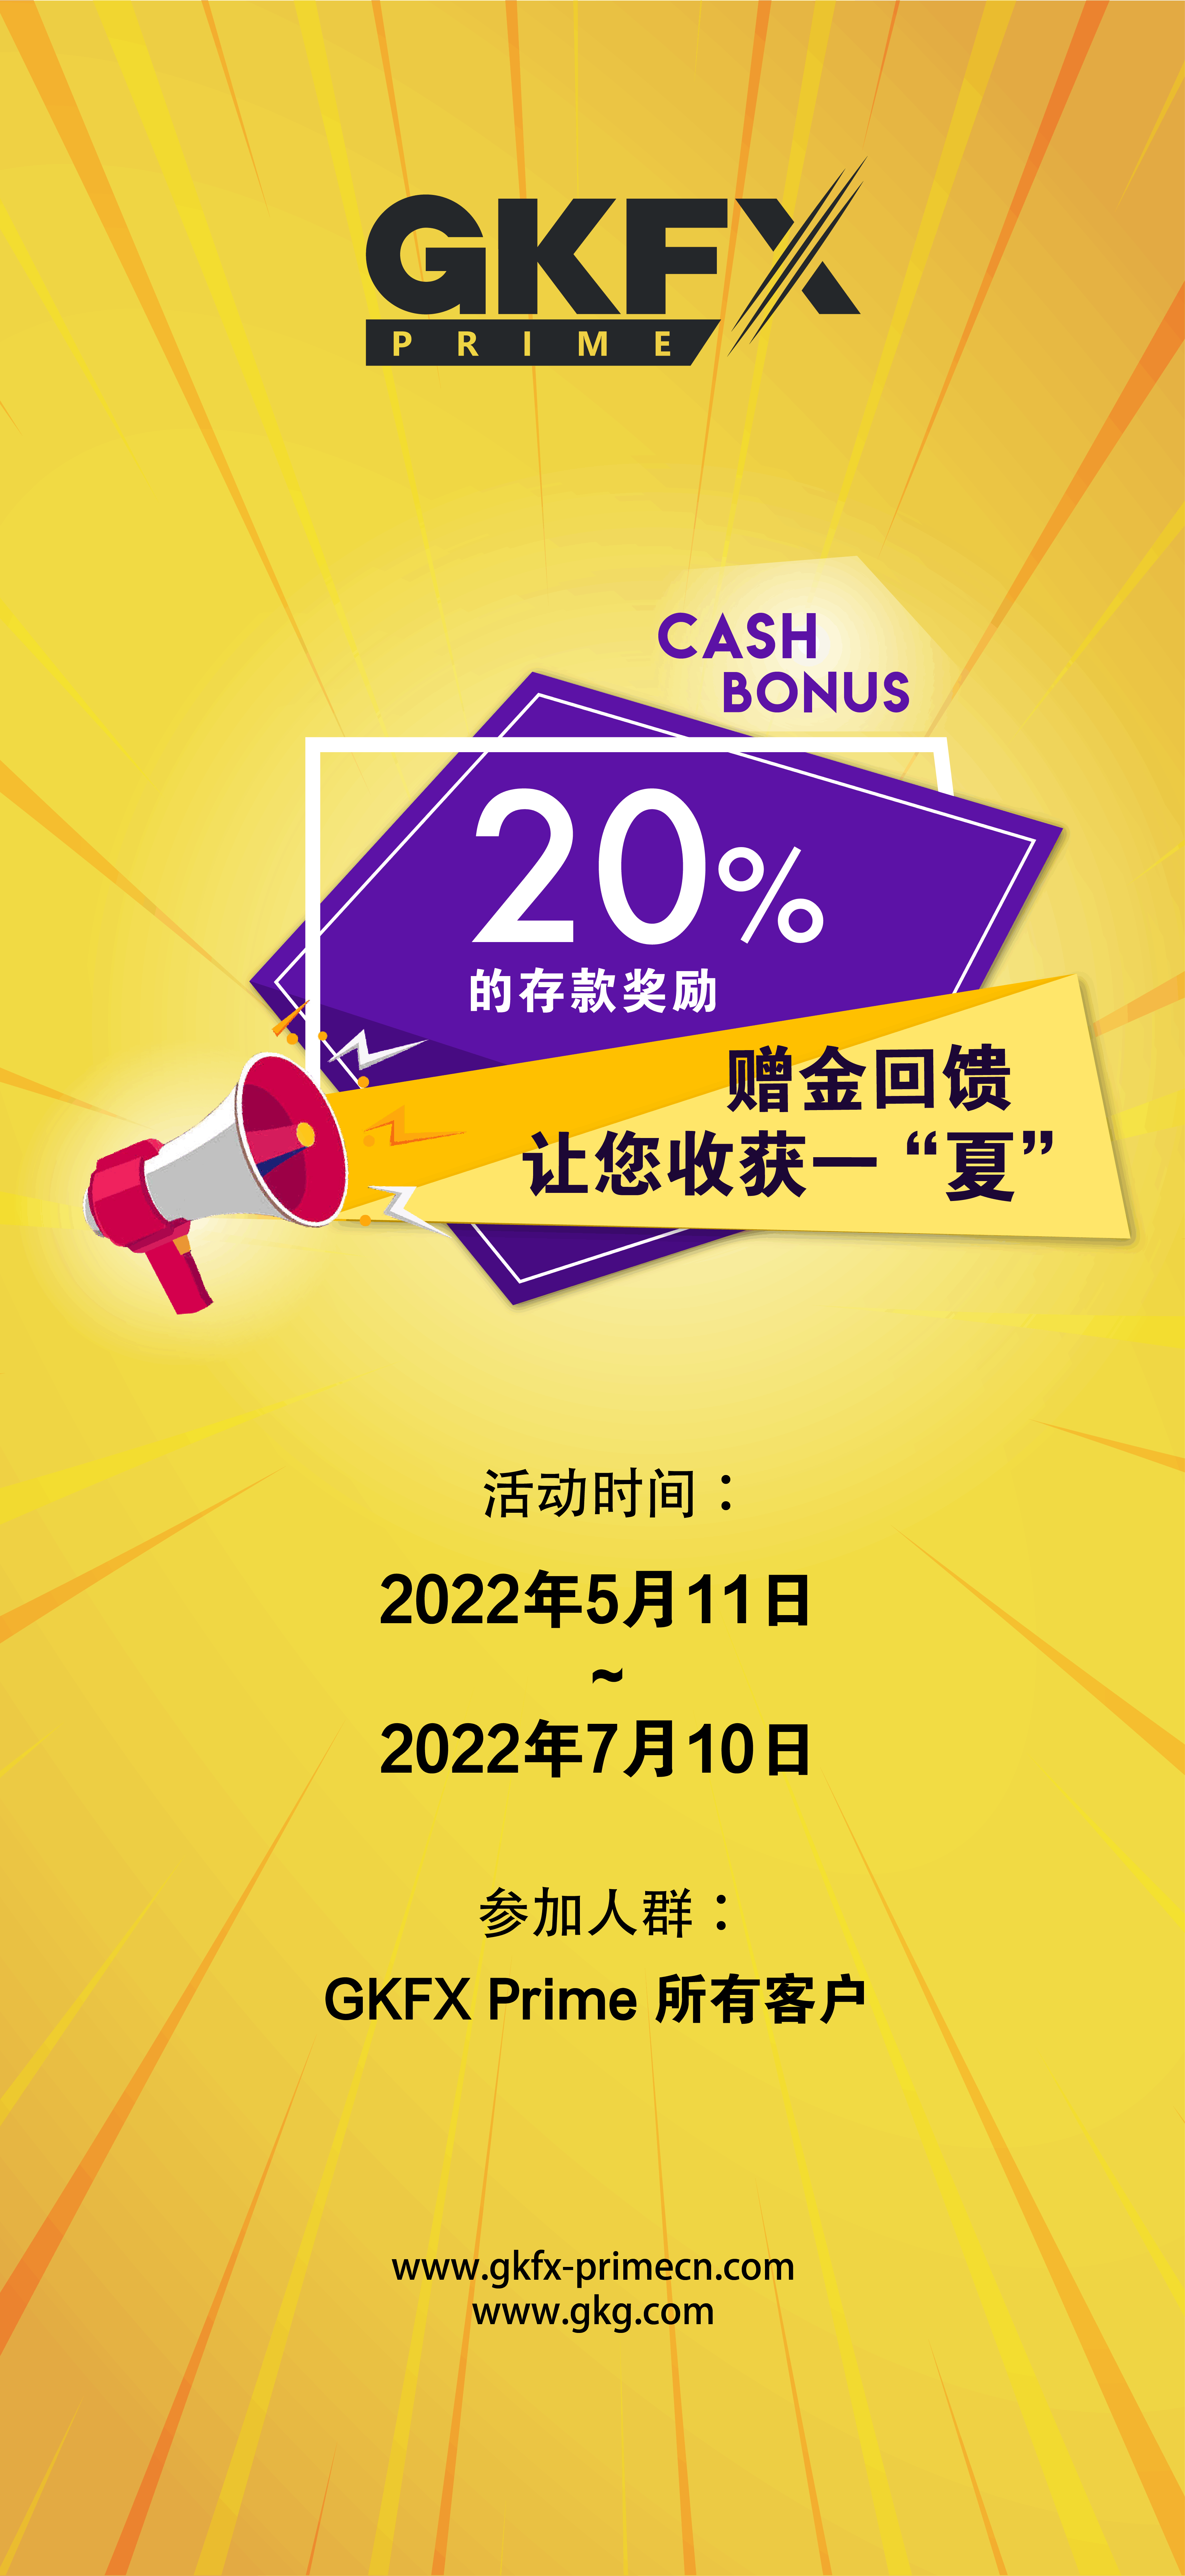 20% 宣传图-cn-2.png